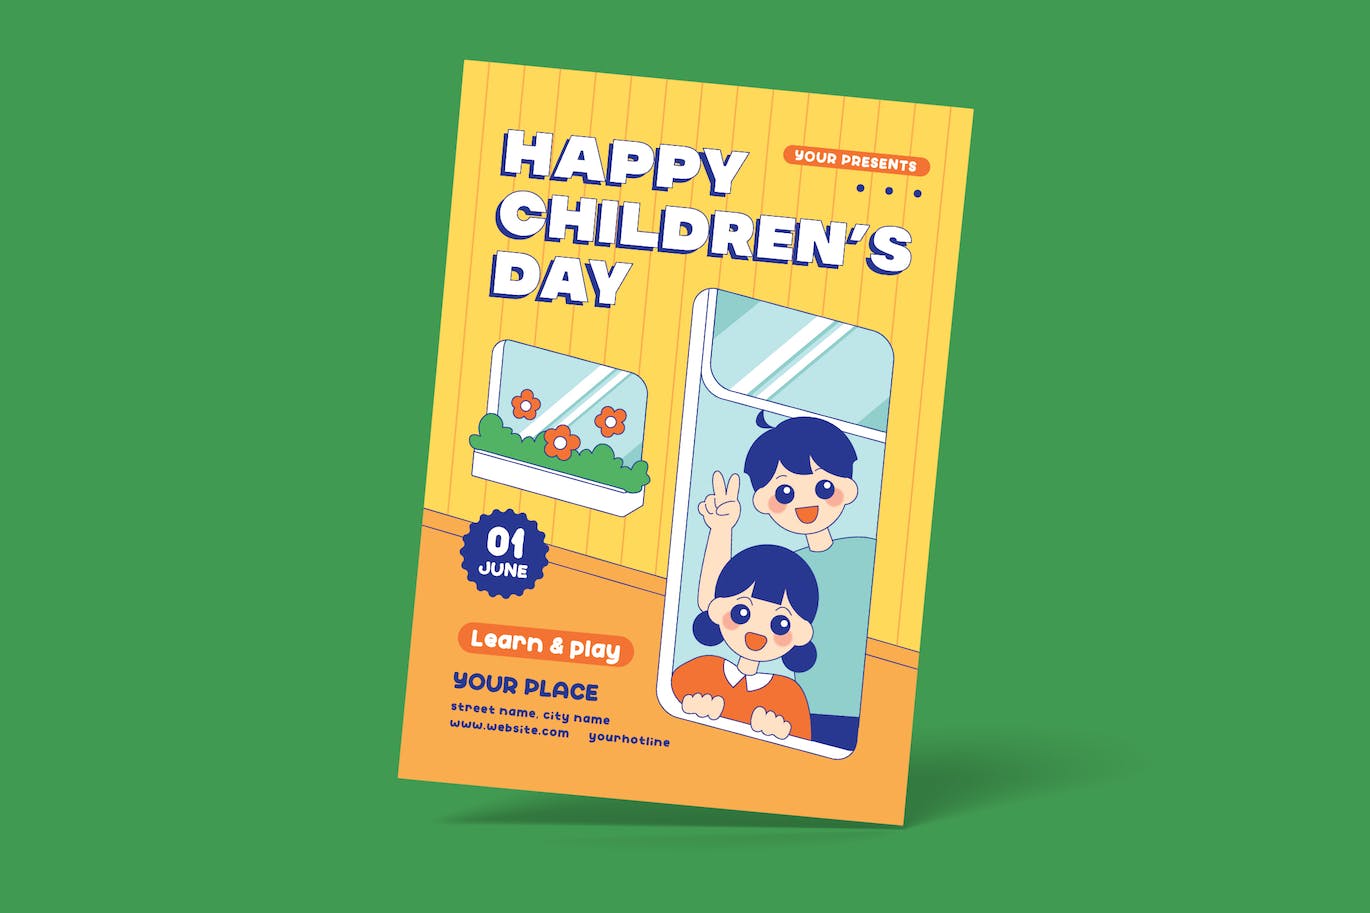 六一儿童节快乐海报设计 Happy Children’s Day Flyer 设计素材 第1张